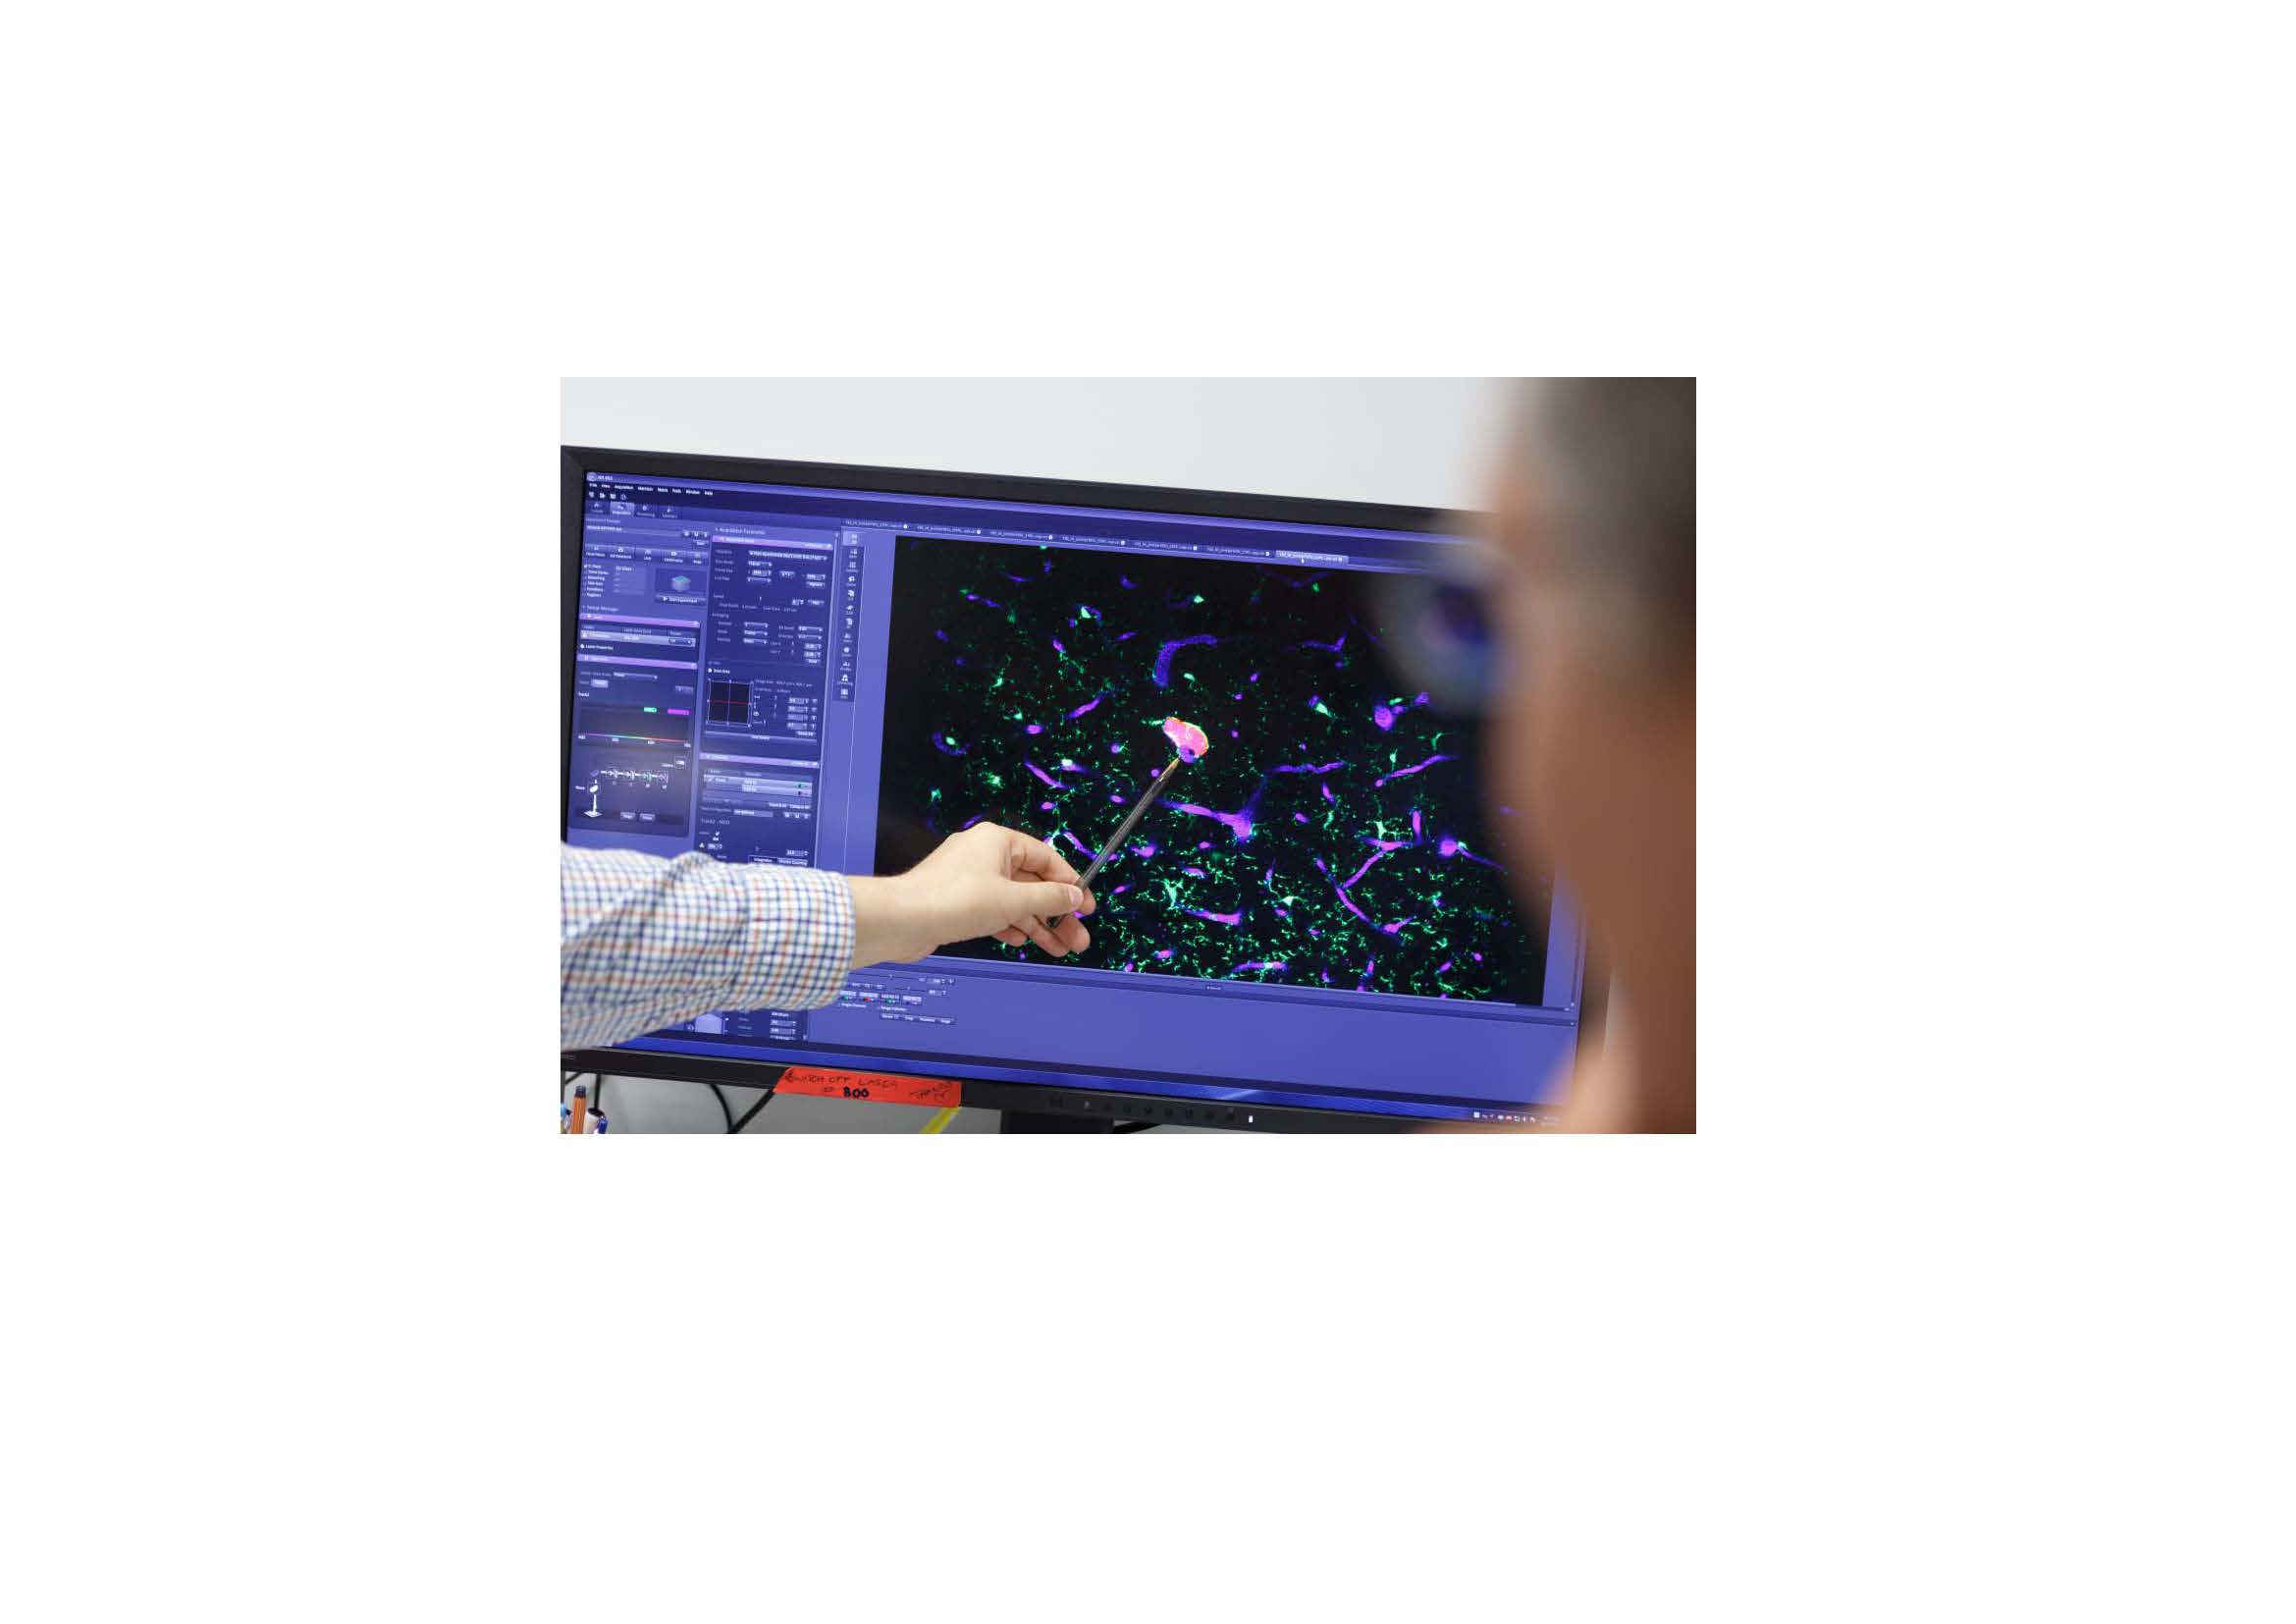 Kernthema des Heidelberger Forschungskollegs für Neuroonkologie ist „Resistenz bei hirneigenen Tumoren“.